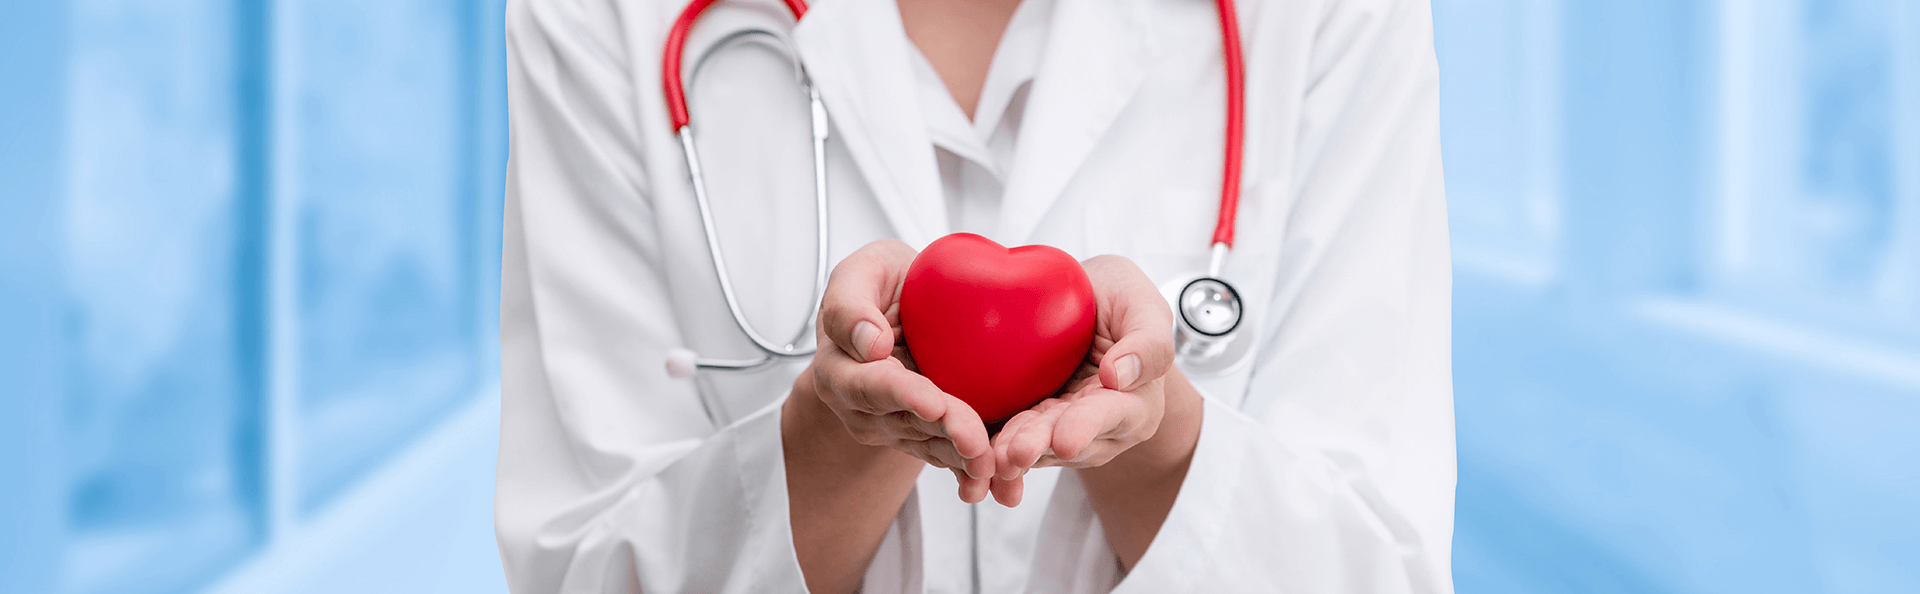 Lekarka trzyma serce na dłoni jako symbol troski o pacjentów